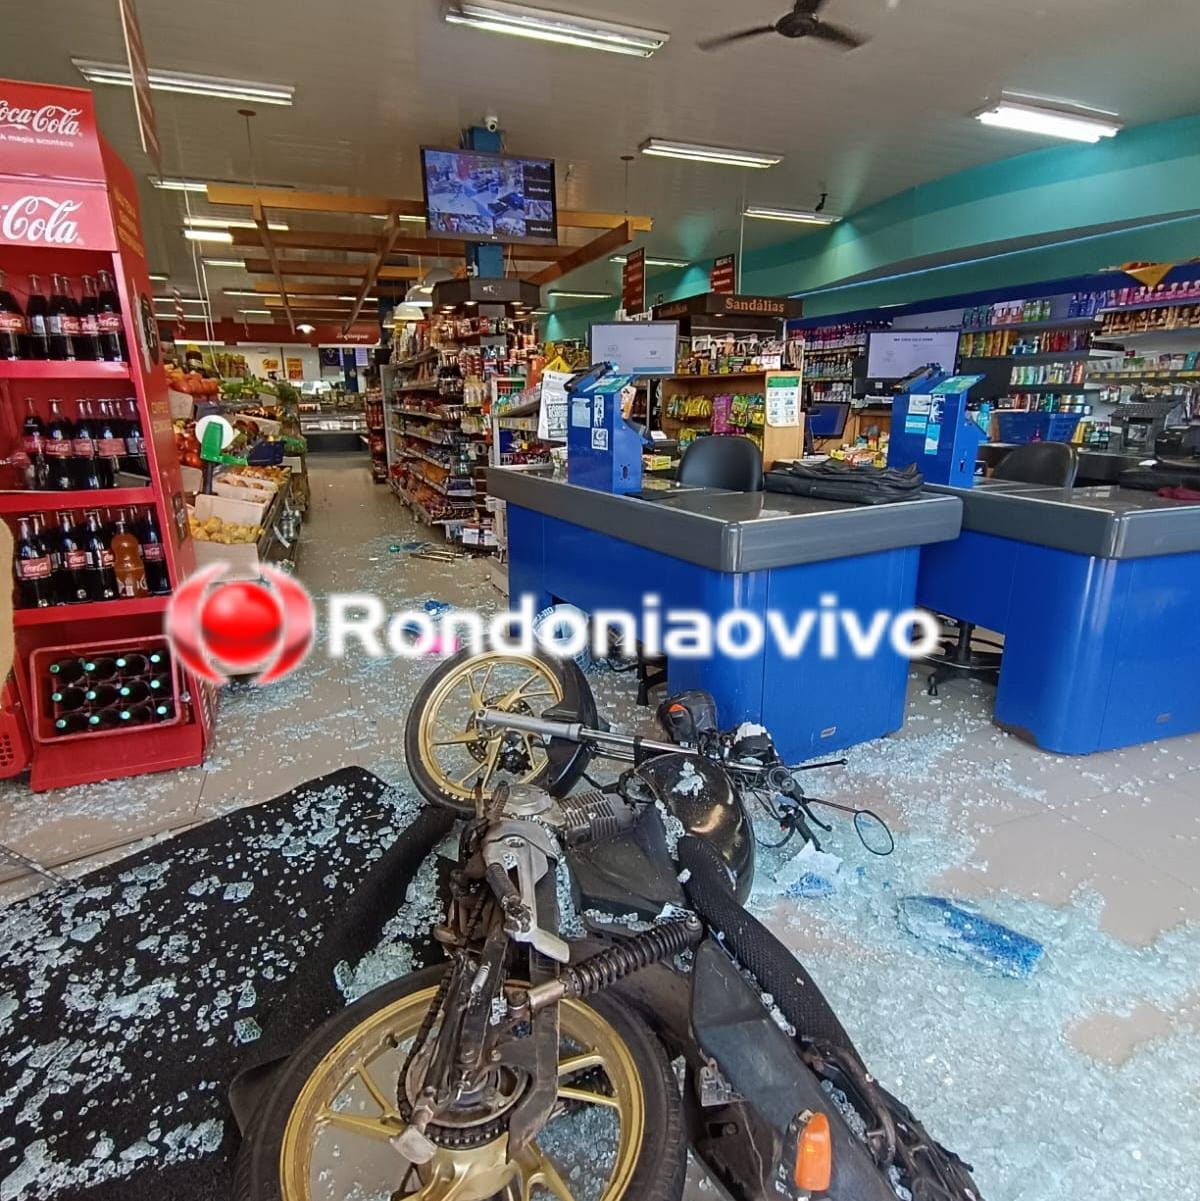 VÍDEO: Motociclista invade supermercado após colisão com carro da Emdur